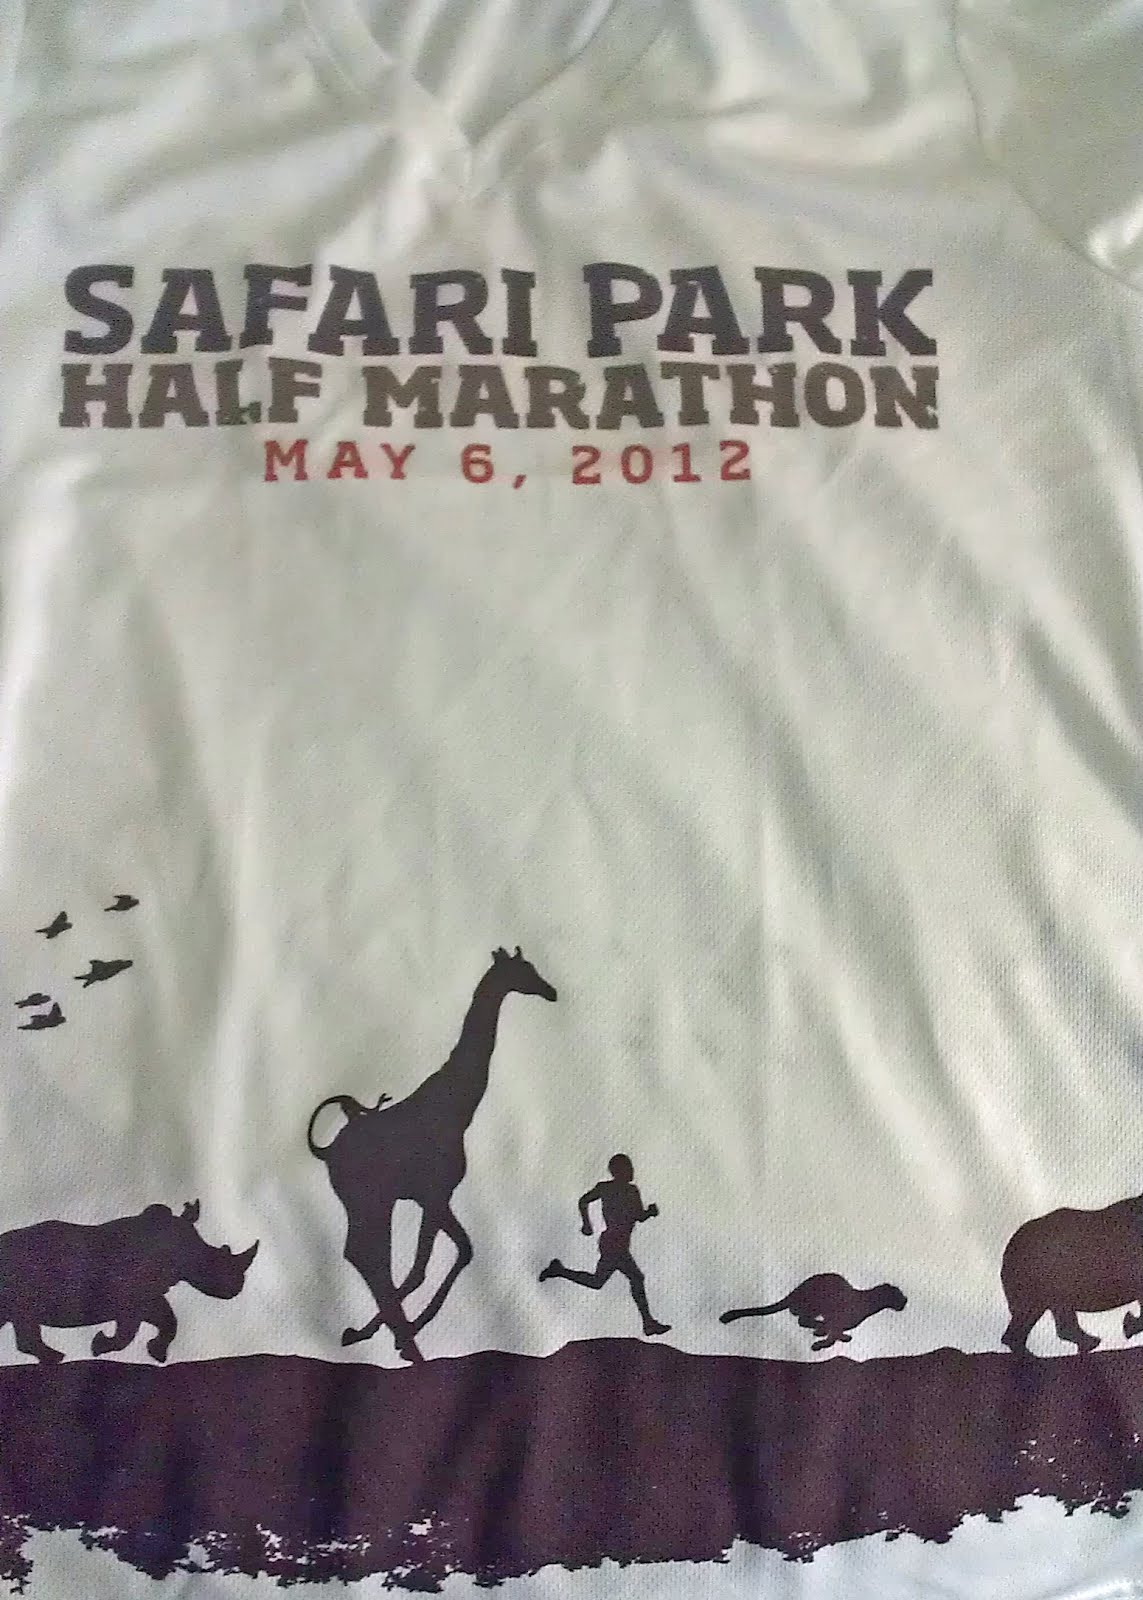 Wild Animal Park Half Marathon 2012